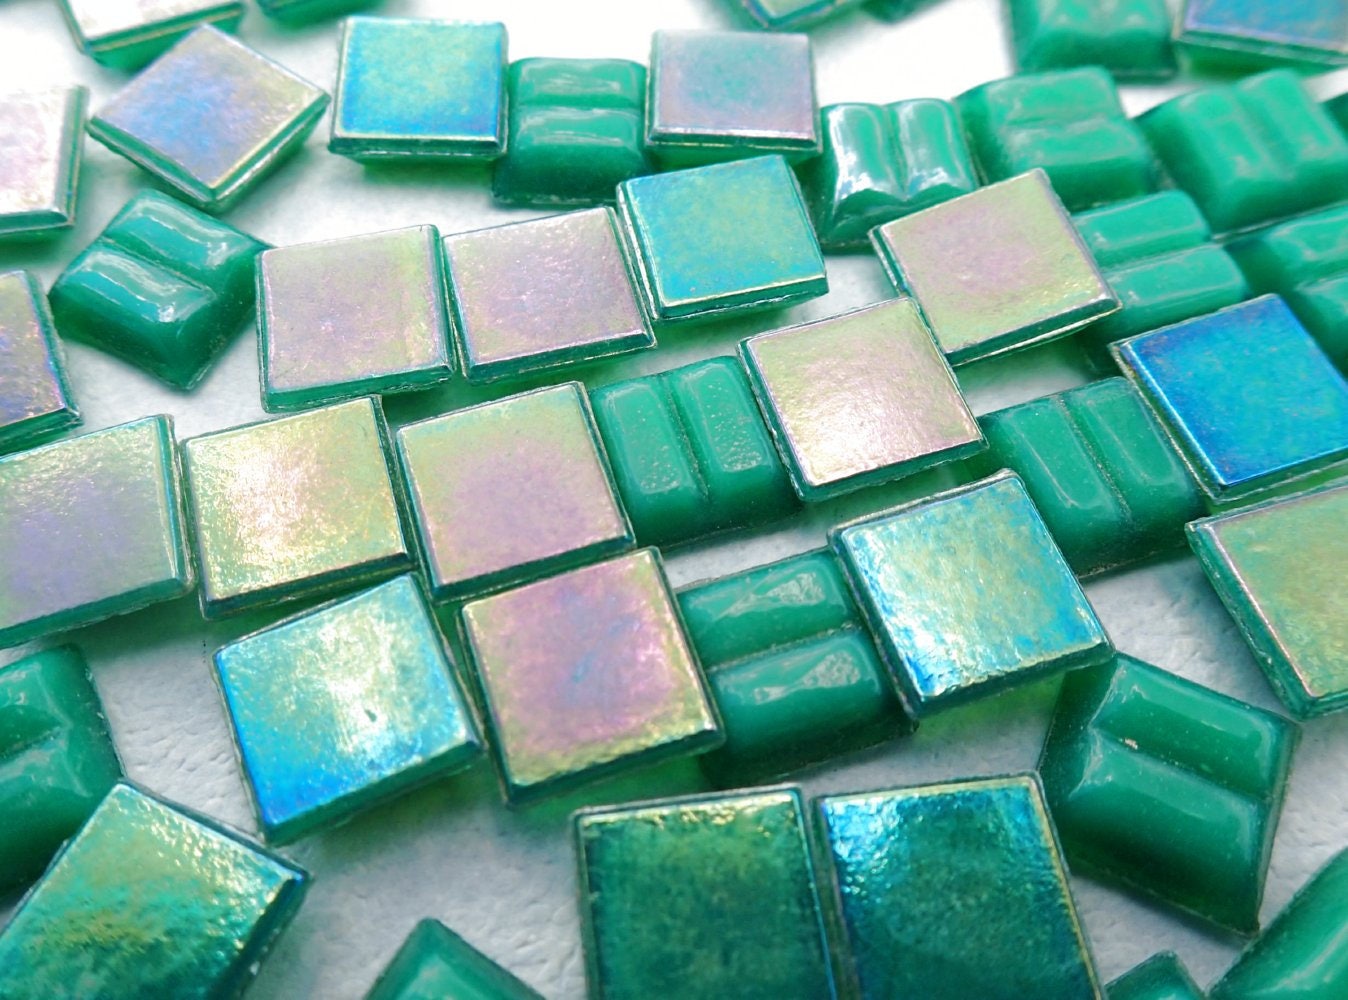 Rainforest Green Iridescent Venetian Glass Tiles - 1 cm - 100 grams - Approx 150 Tiles